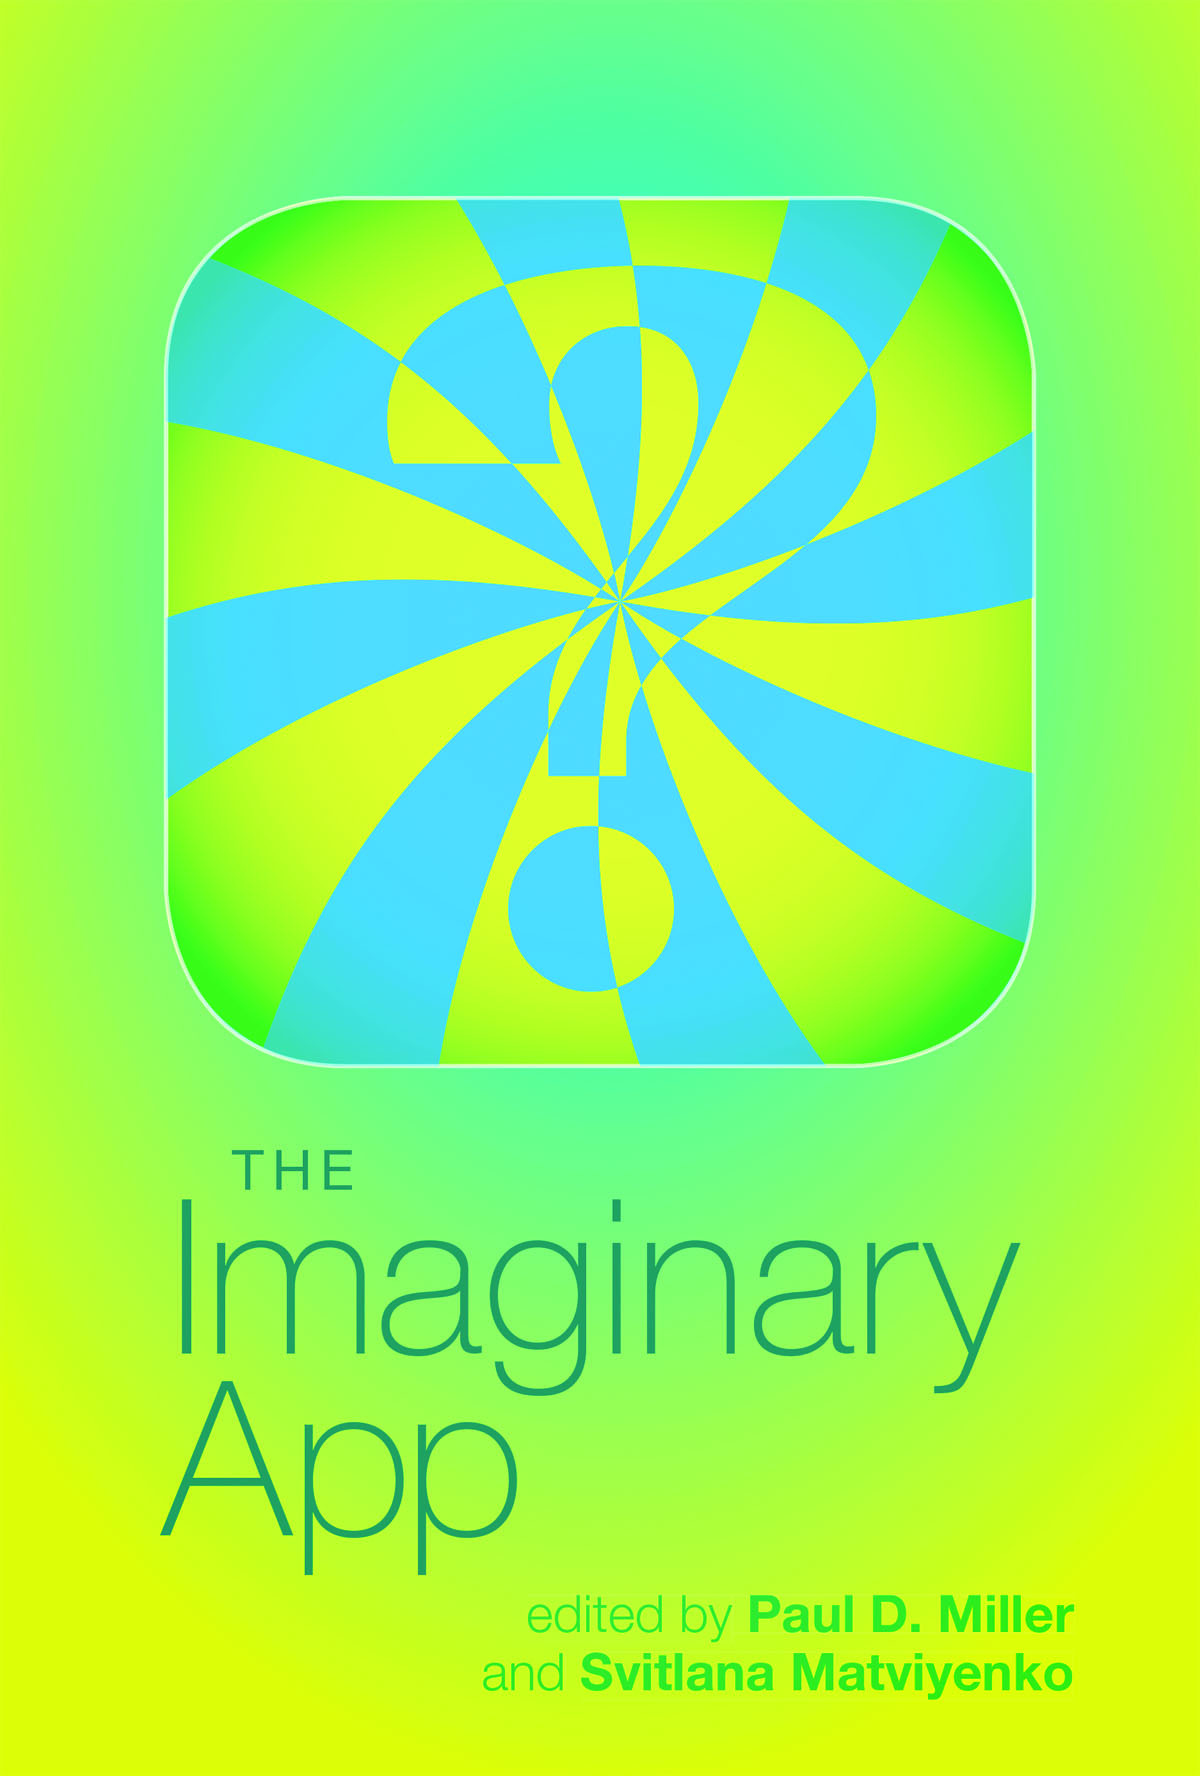 Cover des Buches "The Imaginary App" von Paul D. Miller und Svitlana Matviyenko